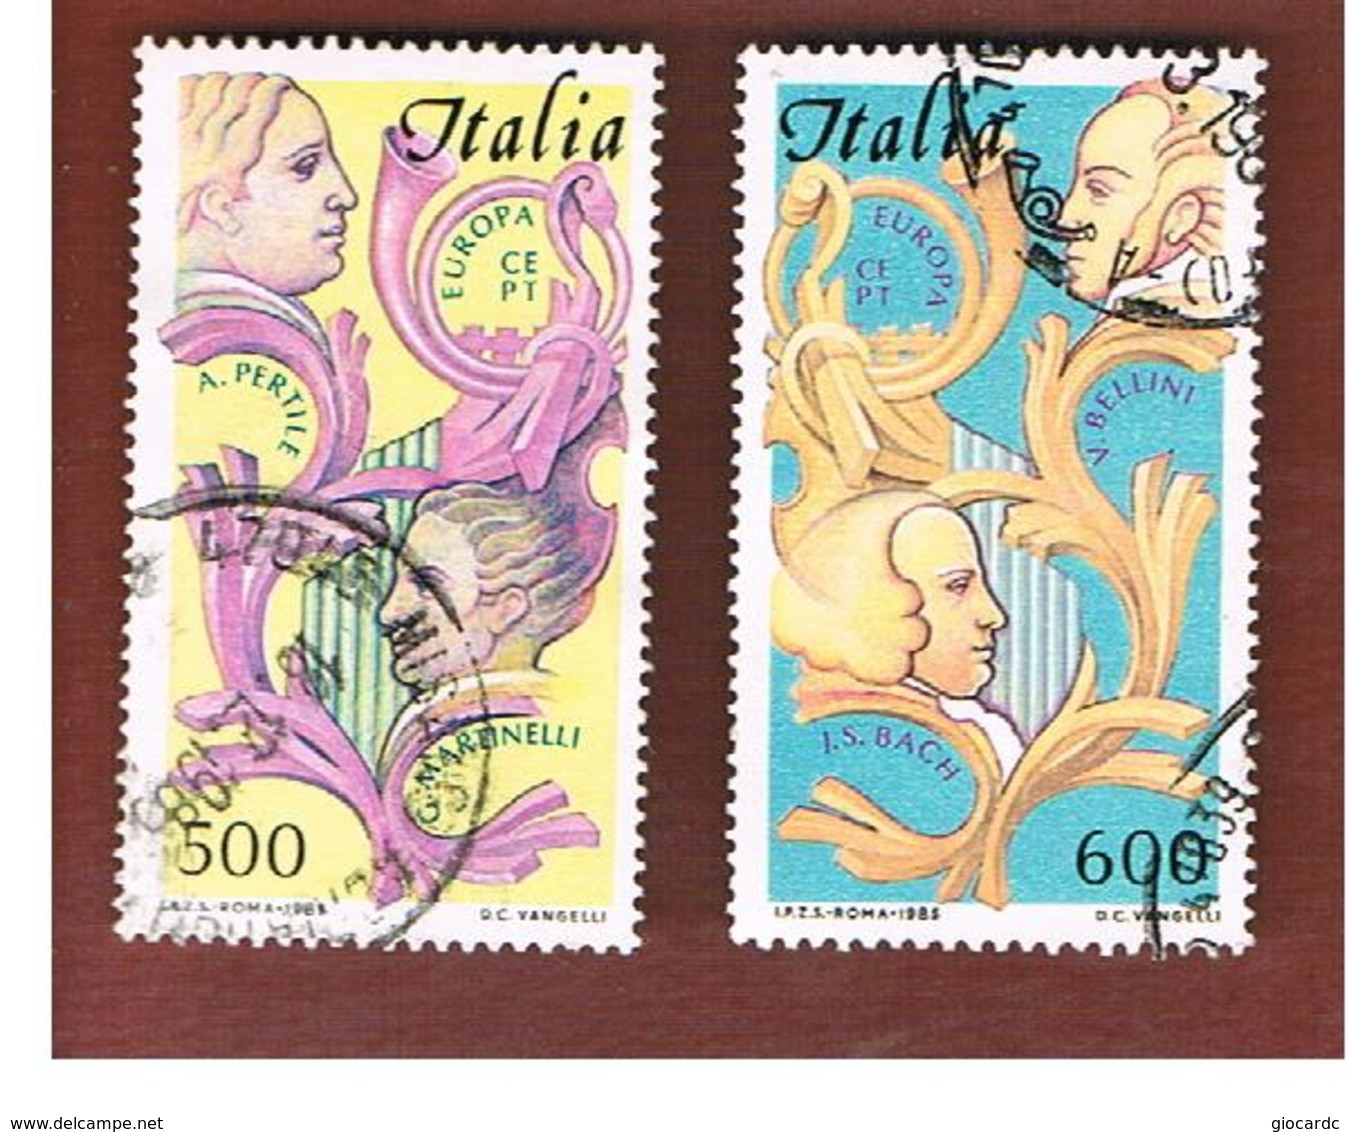 ITALIA REPUBBLICA  - UNIF. 1735.1736    -      1985  EUROPA: MUSIC  (COMPLET SET OF 2)   -      USATO  - RIF. 30860.61 - 1981-90: Usati